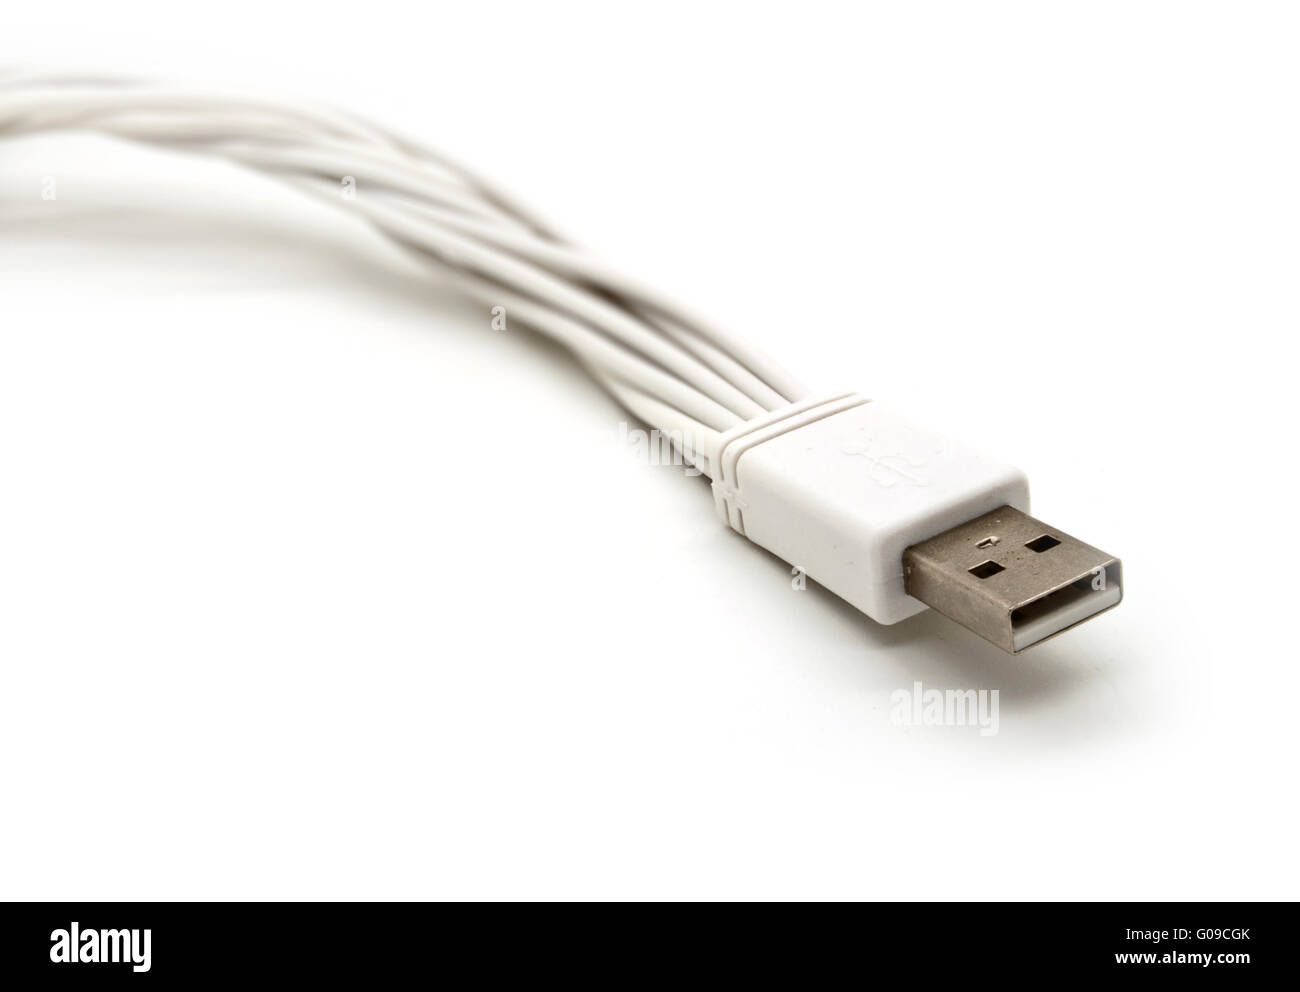 Le chargement USB se branche sur un fond blanc Banque D'Images